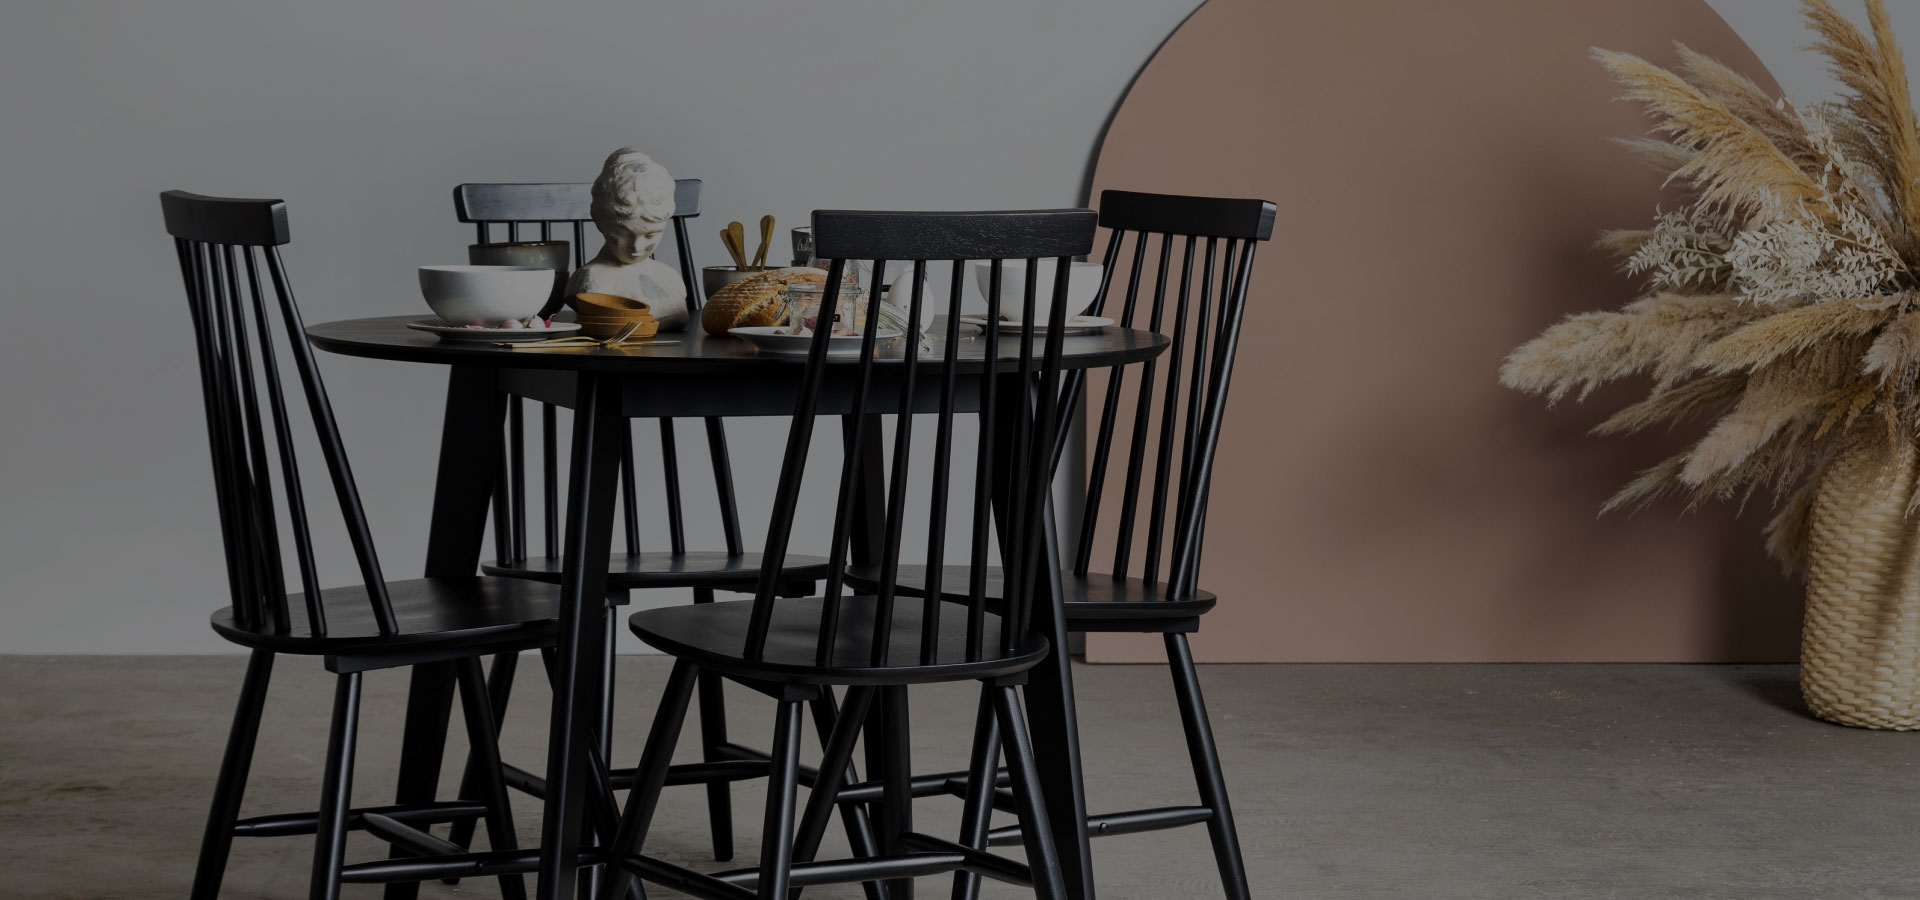 Czarny drewniany zestaw składający się ze stołu i krzeseł, na którym widać zastawę stołową. W tle kompozycja z suszonych kwiatów.